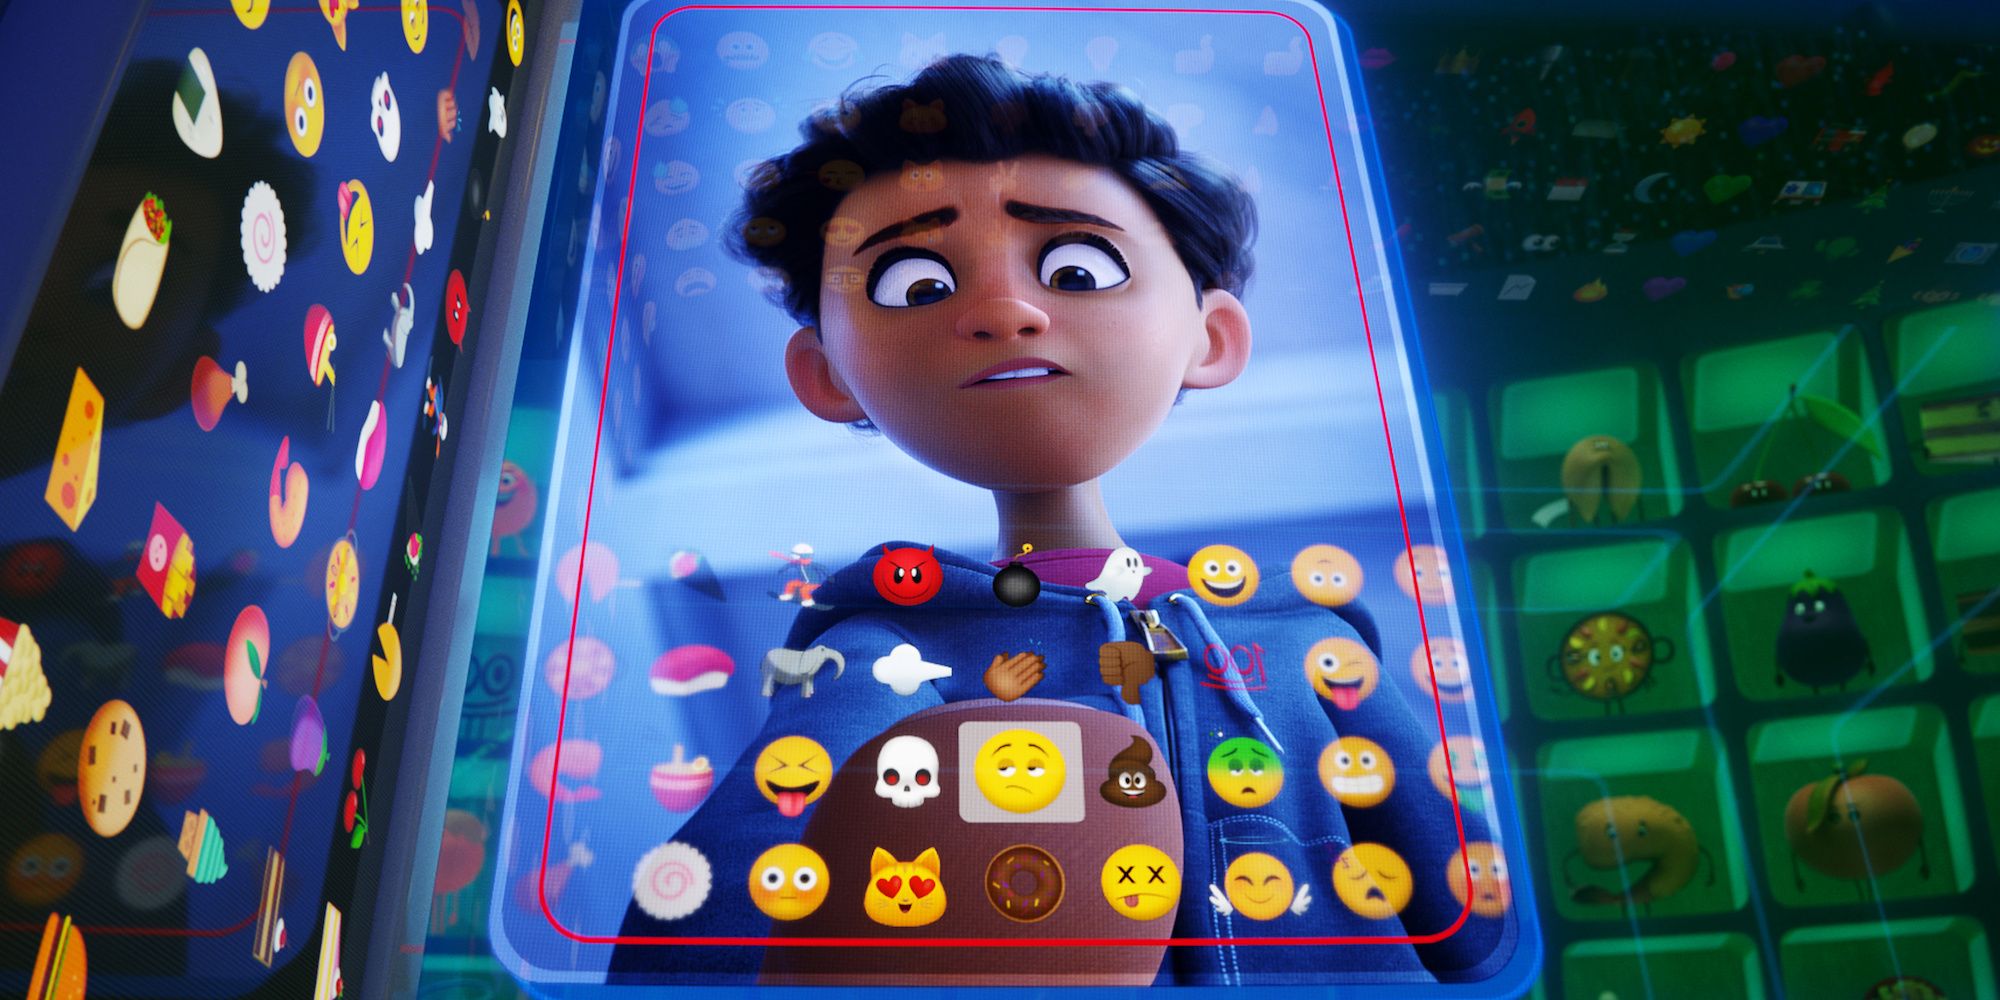 Alex looking at his phone in The Emoji Movie